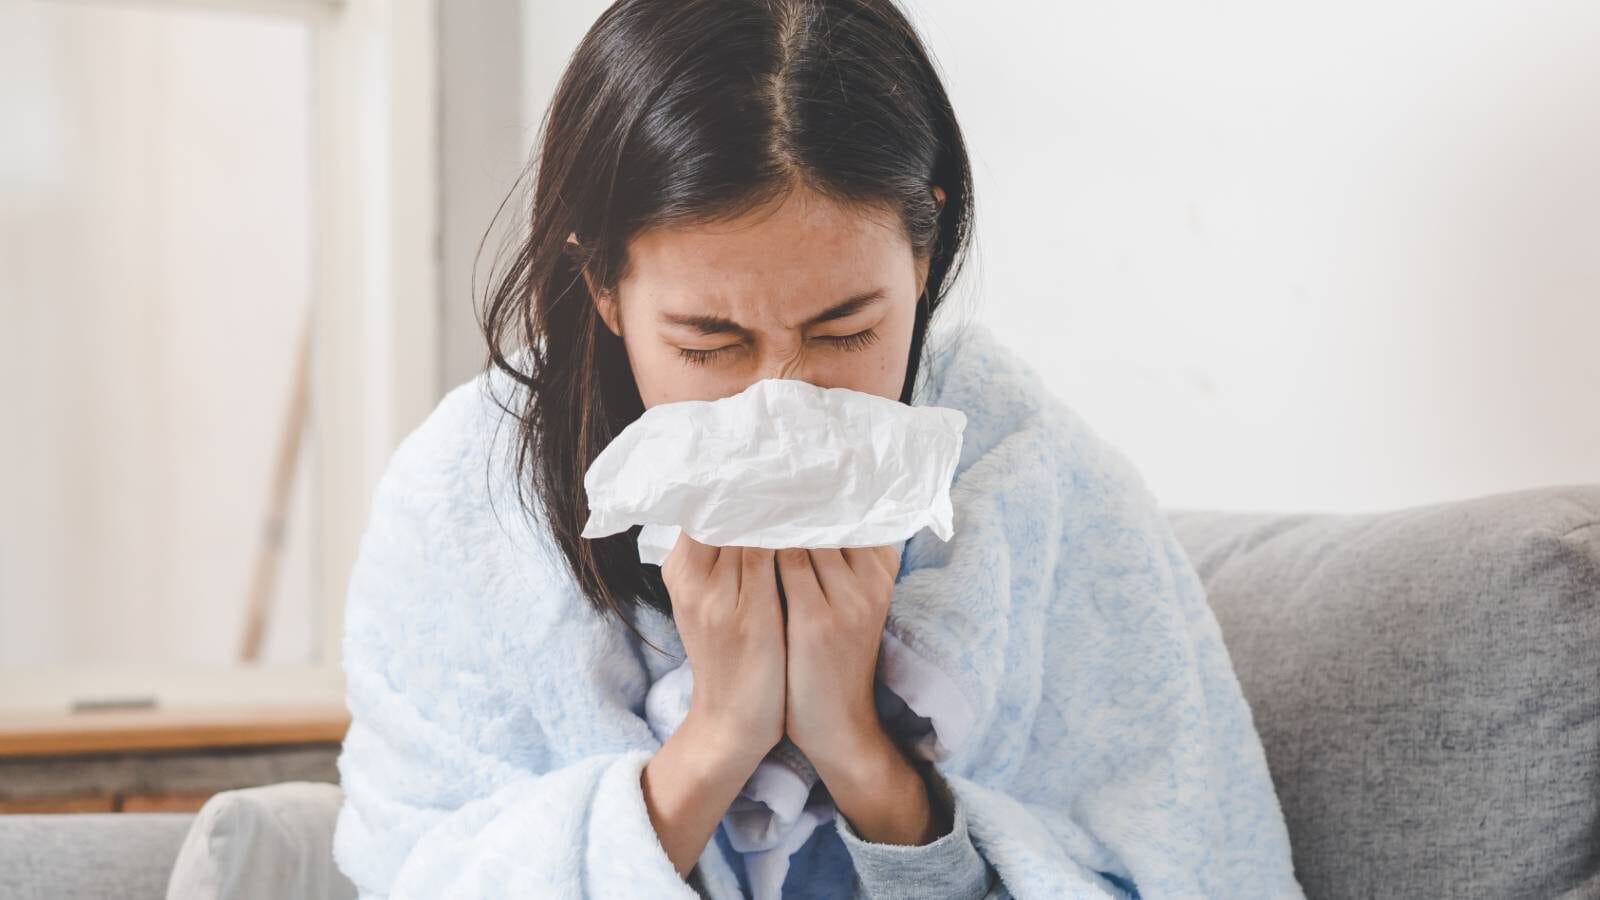 सामान्य जुखाम: सर्दी शुरू होने से पहले उसे रोकने के 5 तरीके